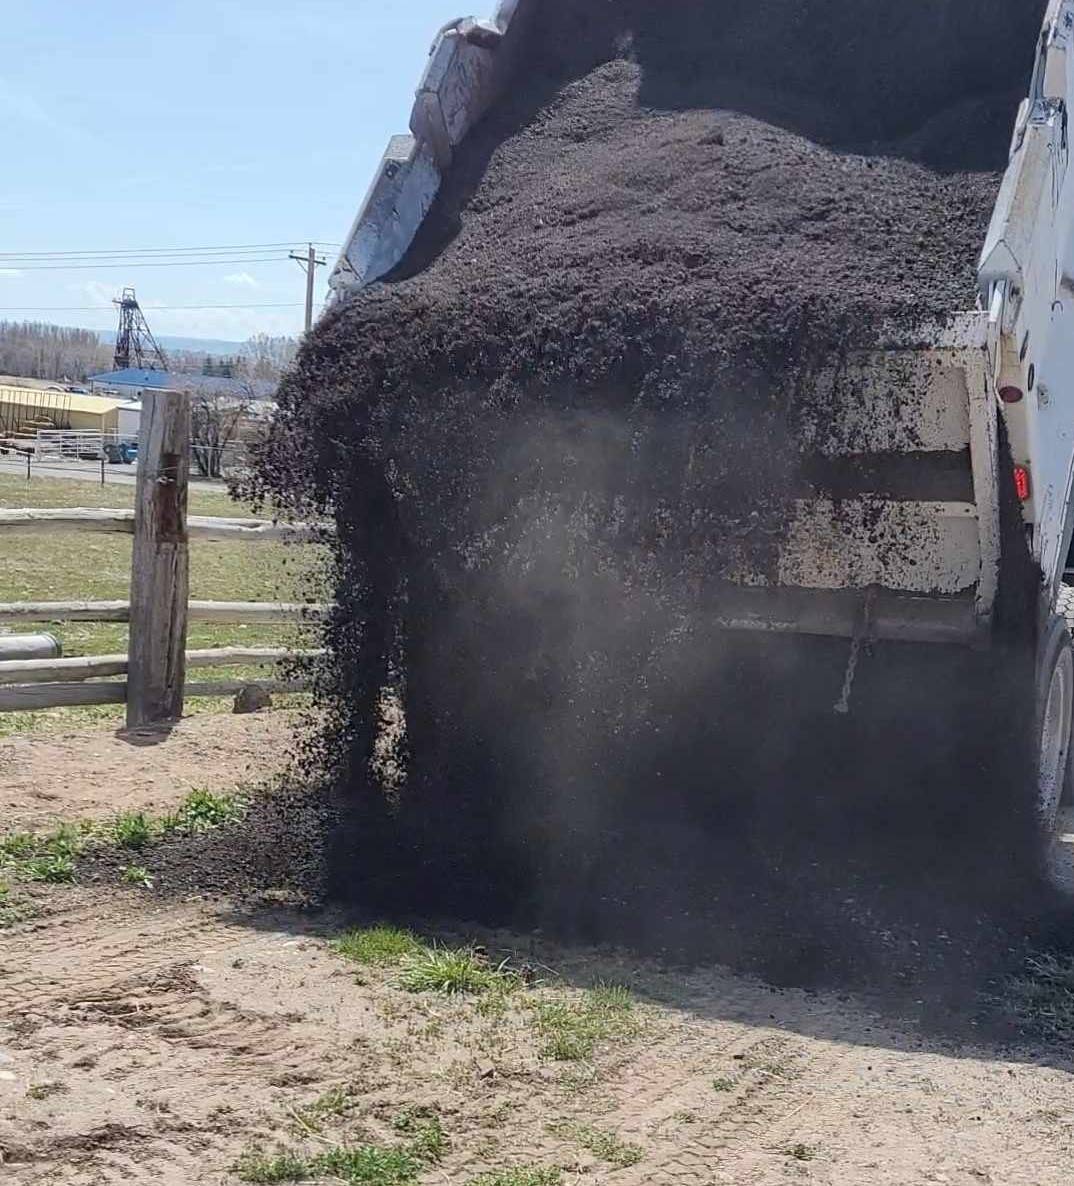 Dump truck unloaded crushed asphalt on a dirt lane.